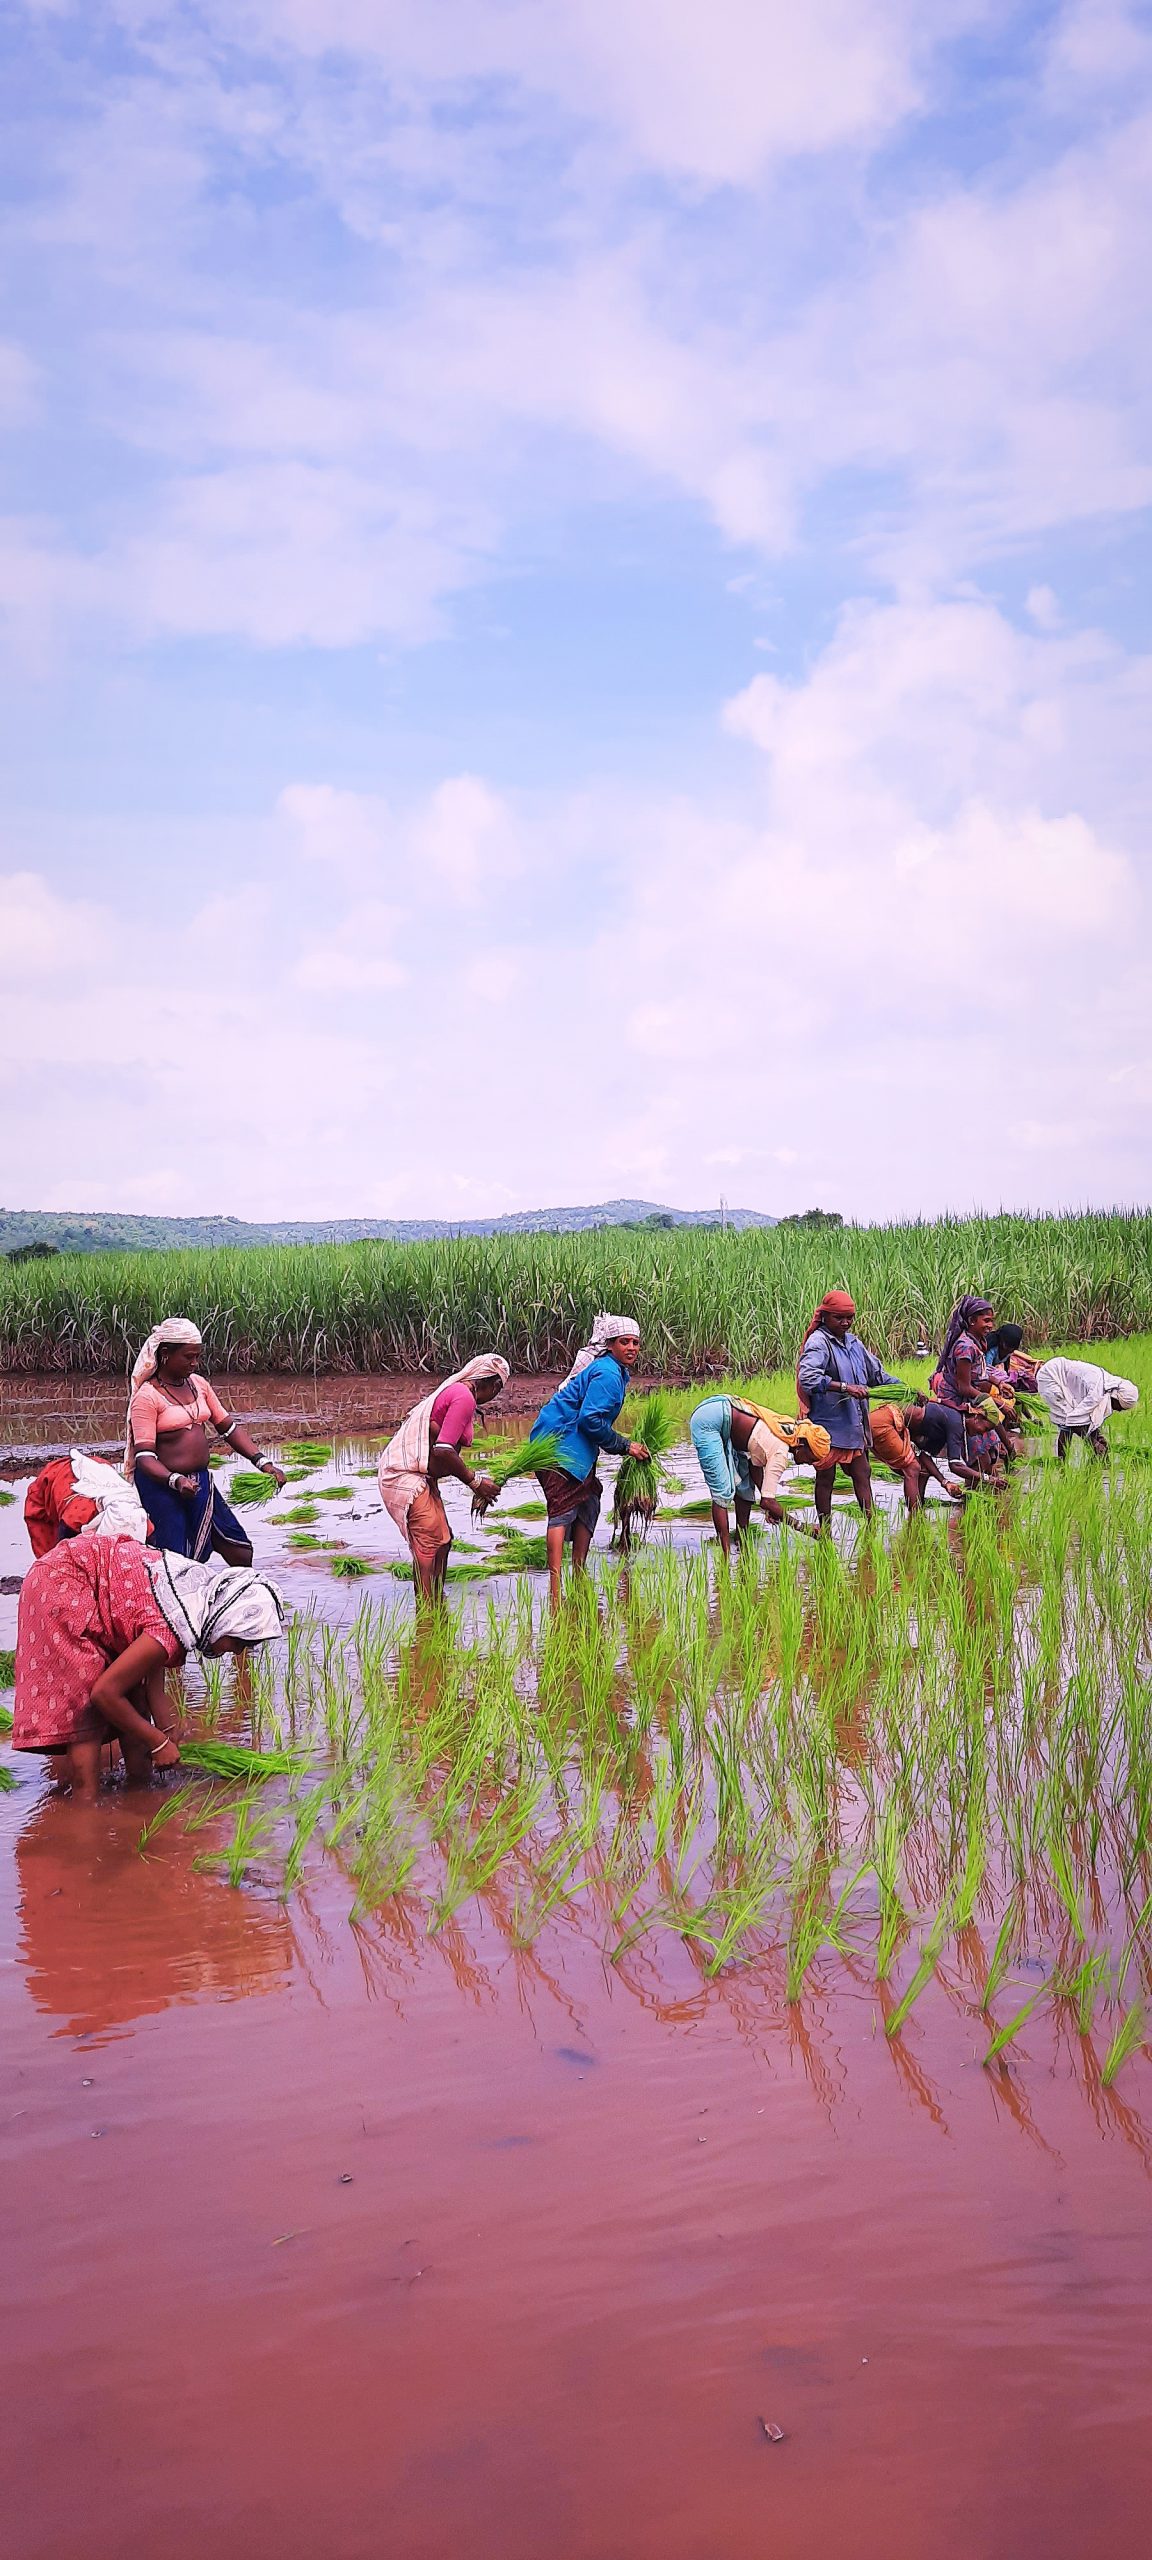 Farmers in paddy field